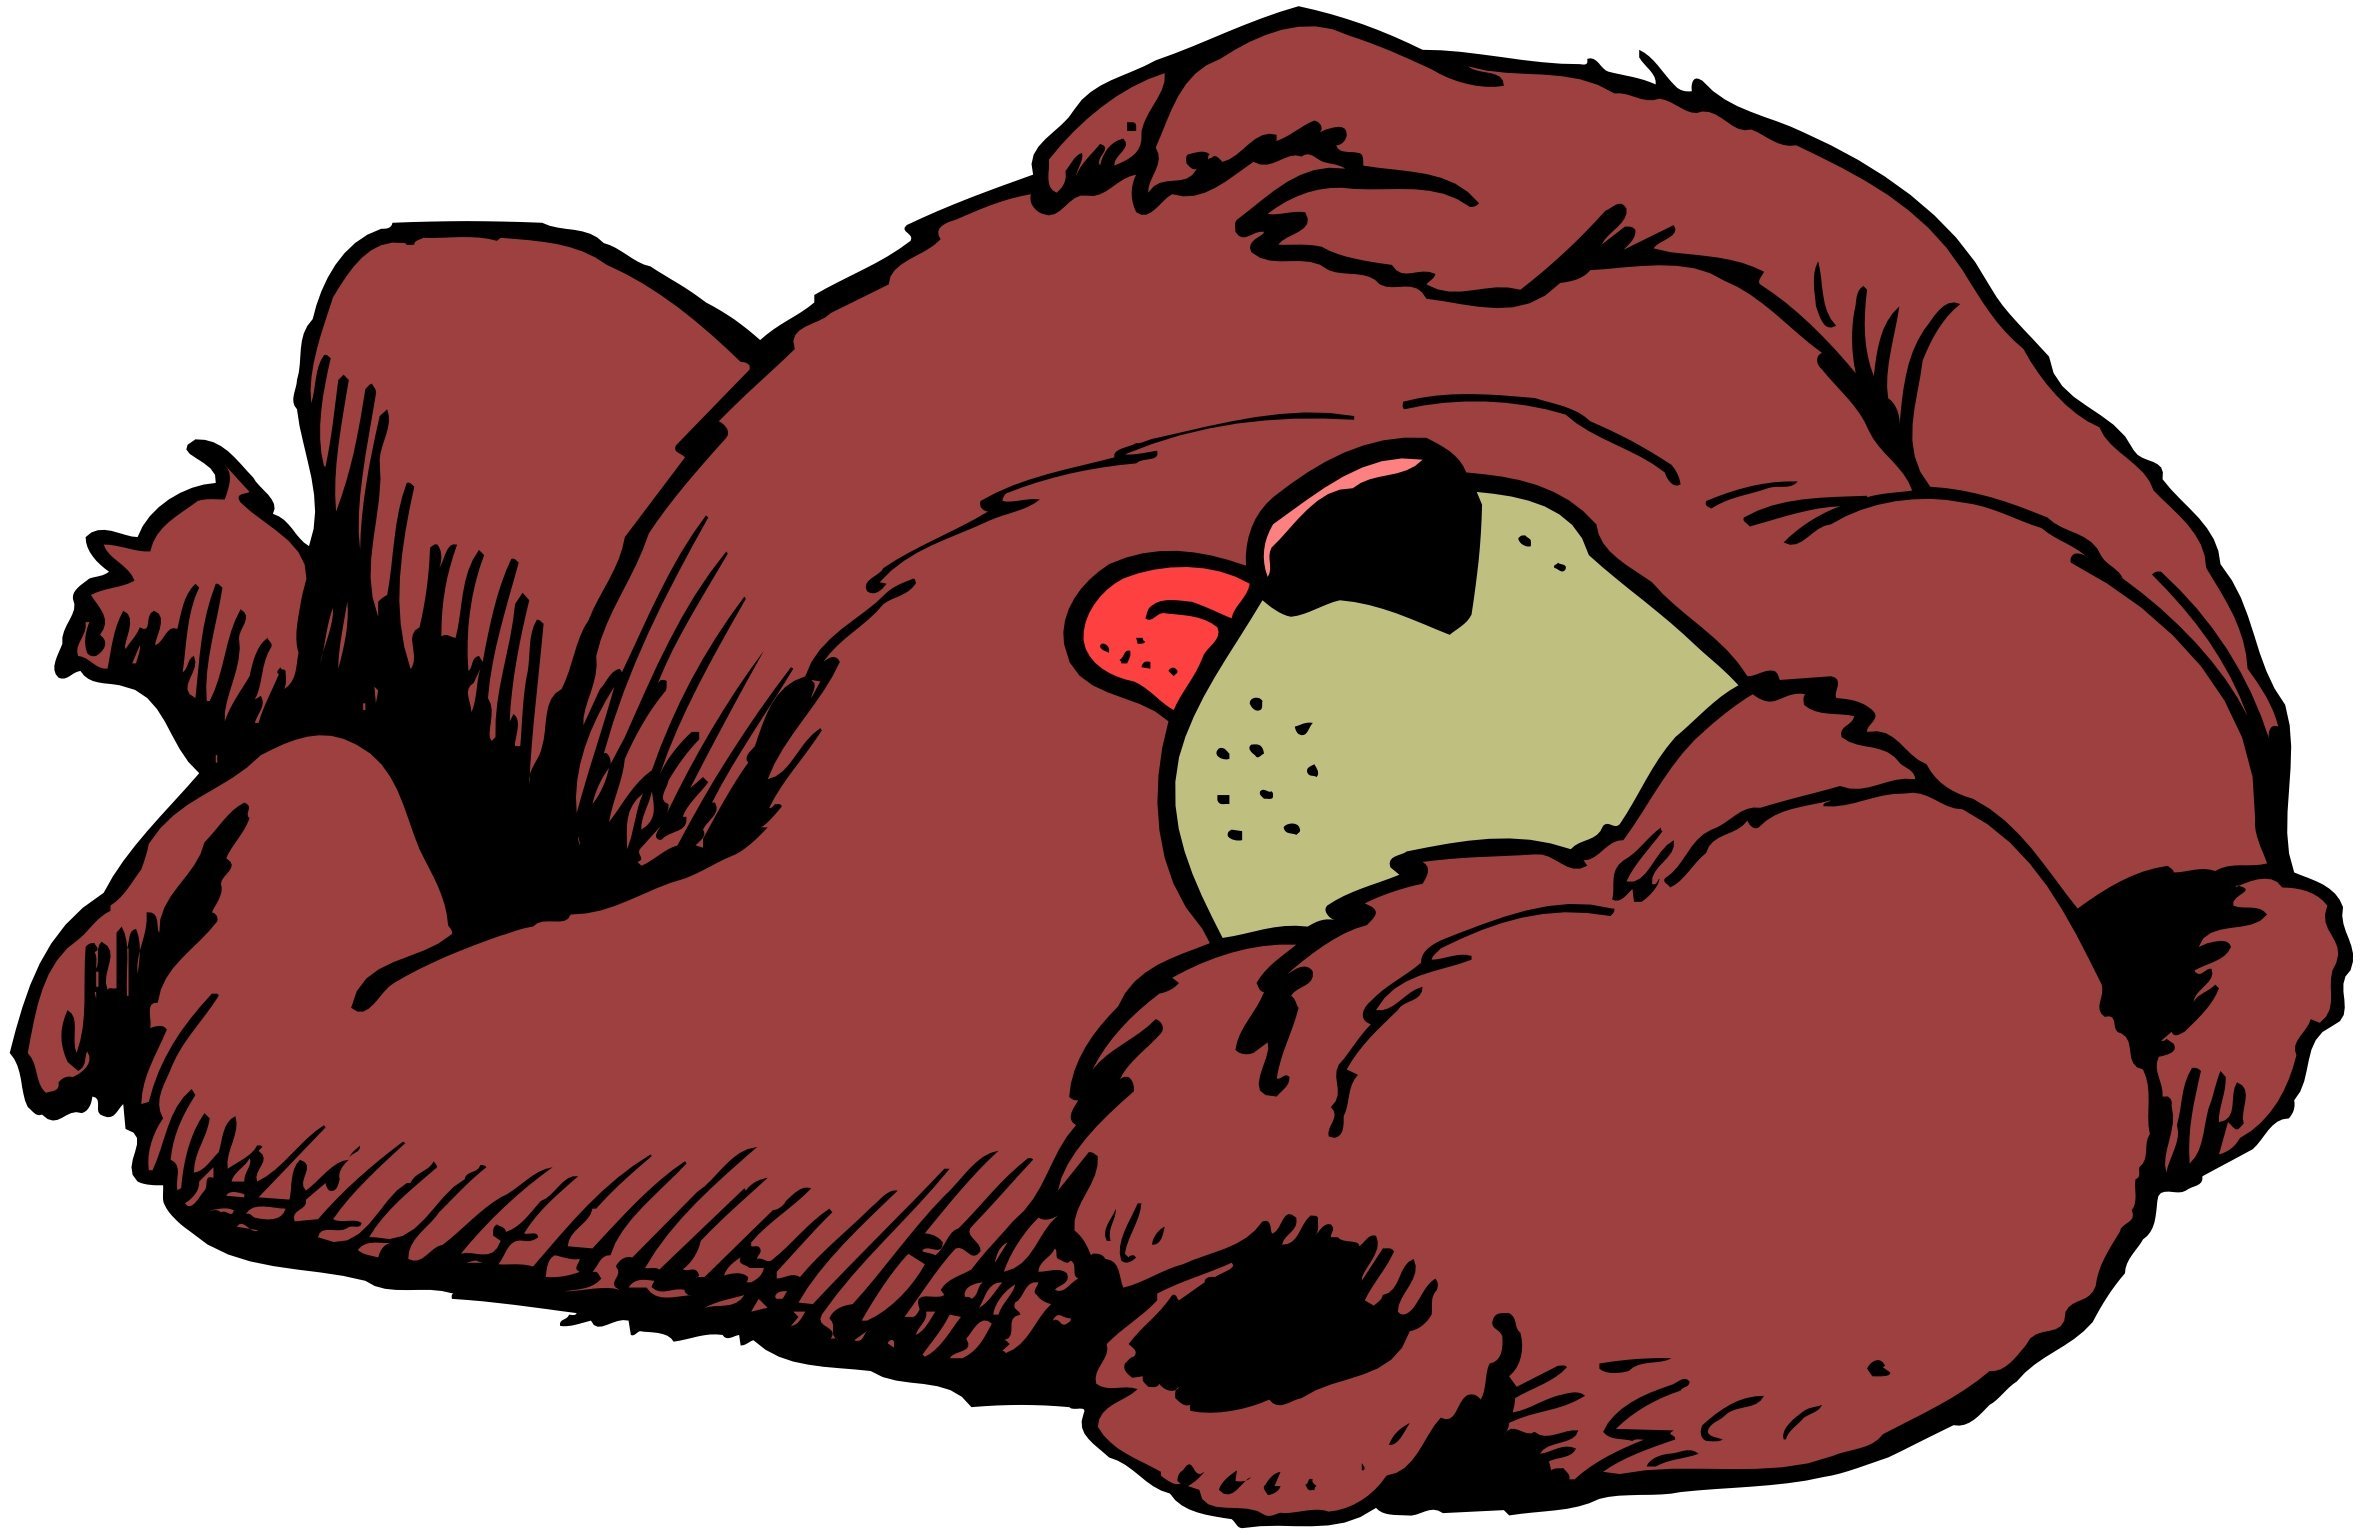 Мишка лег спать. Спящий медведь. Сонный медведь.